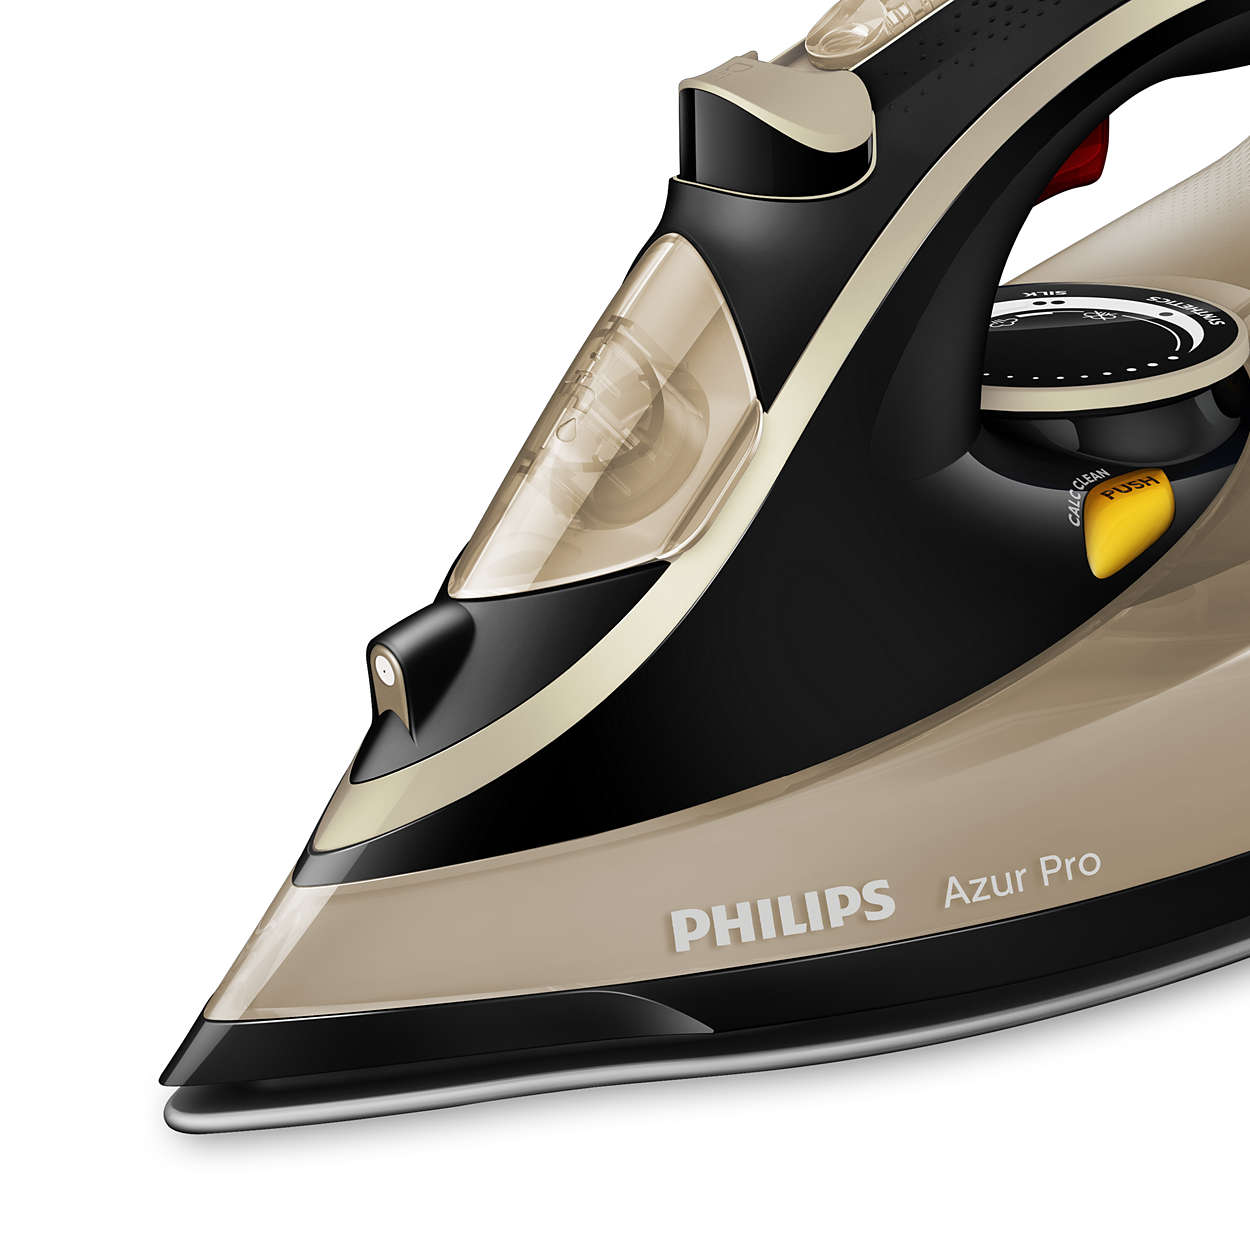 Утюг филипс видео. Утюг Philips Azur Pro 3000w. Philips gc4887/30 Azur Pro. Утюг Филипс Азур. Утюг Филипс Azur Pro 4885.